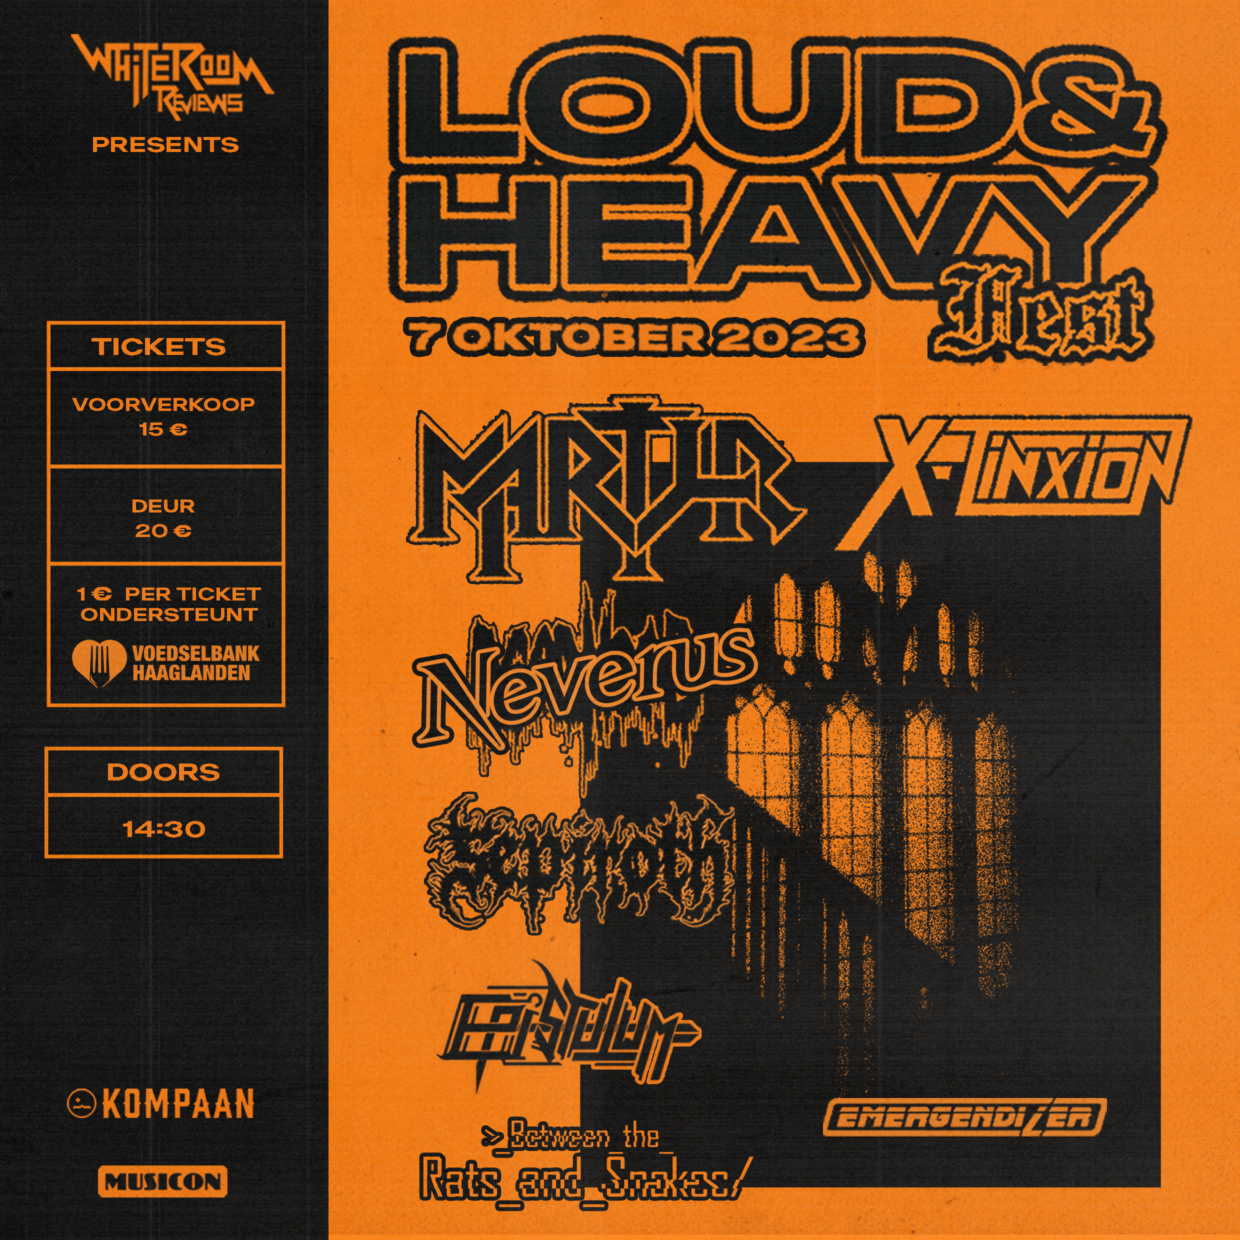 Loud & heavy 2023